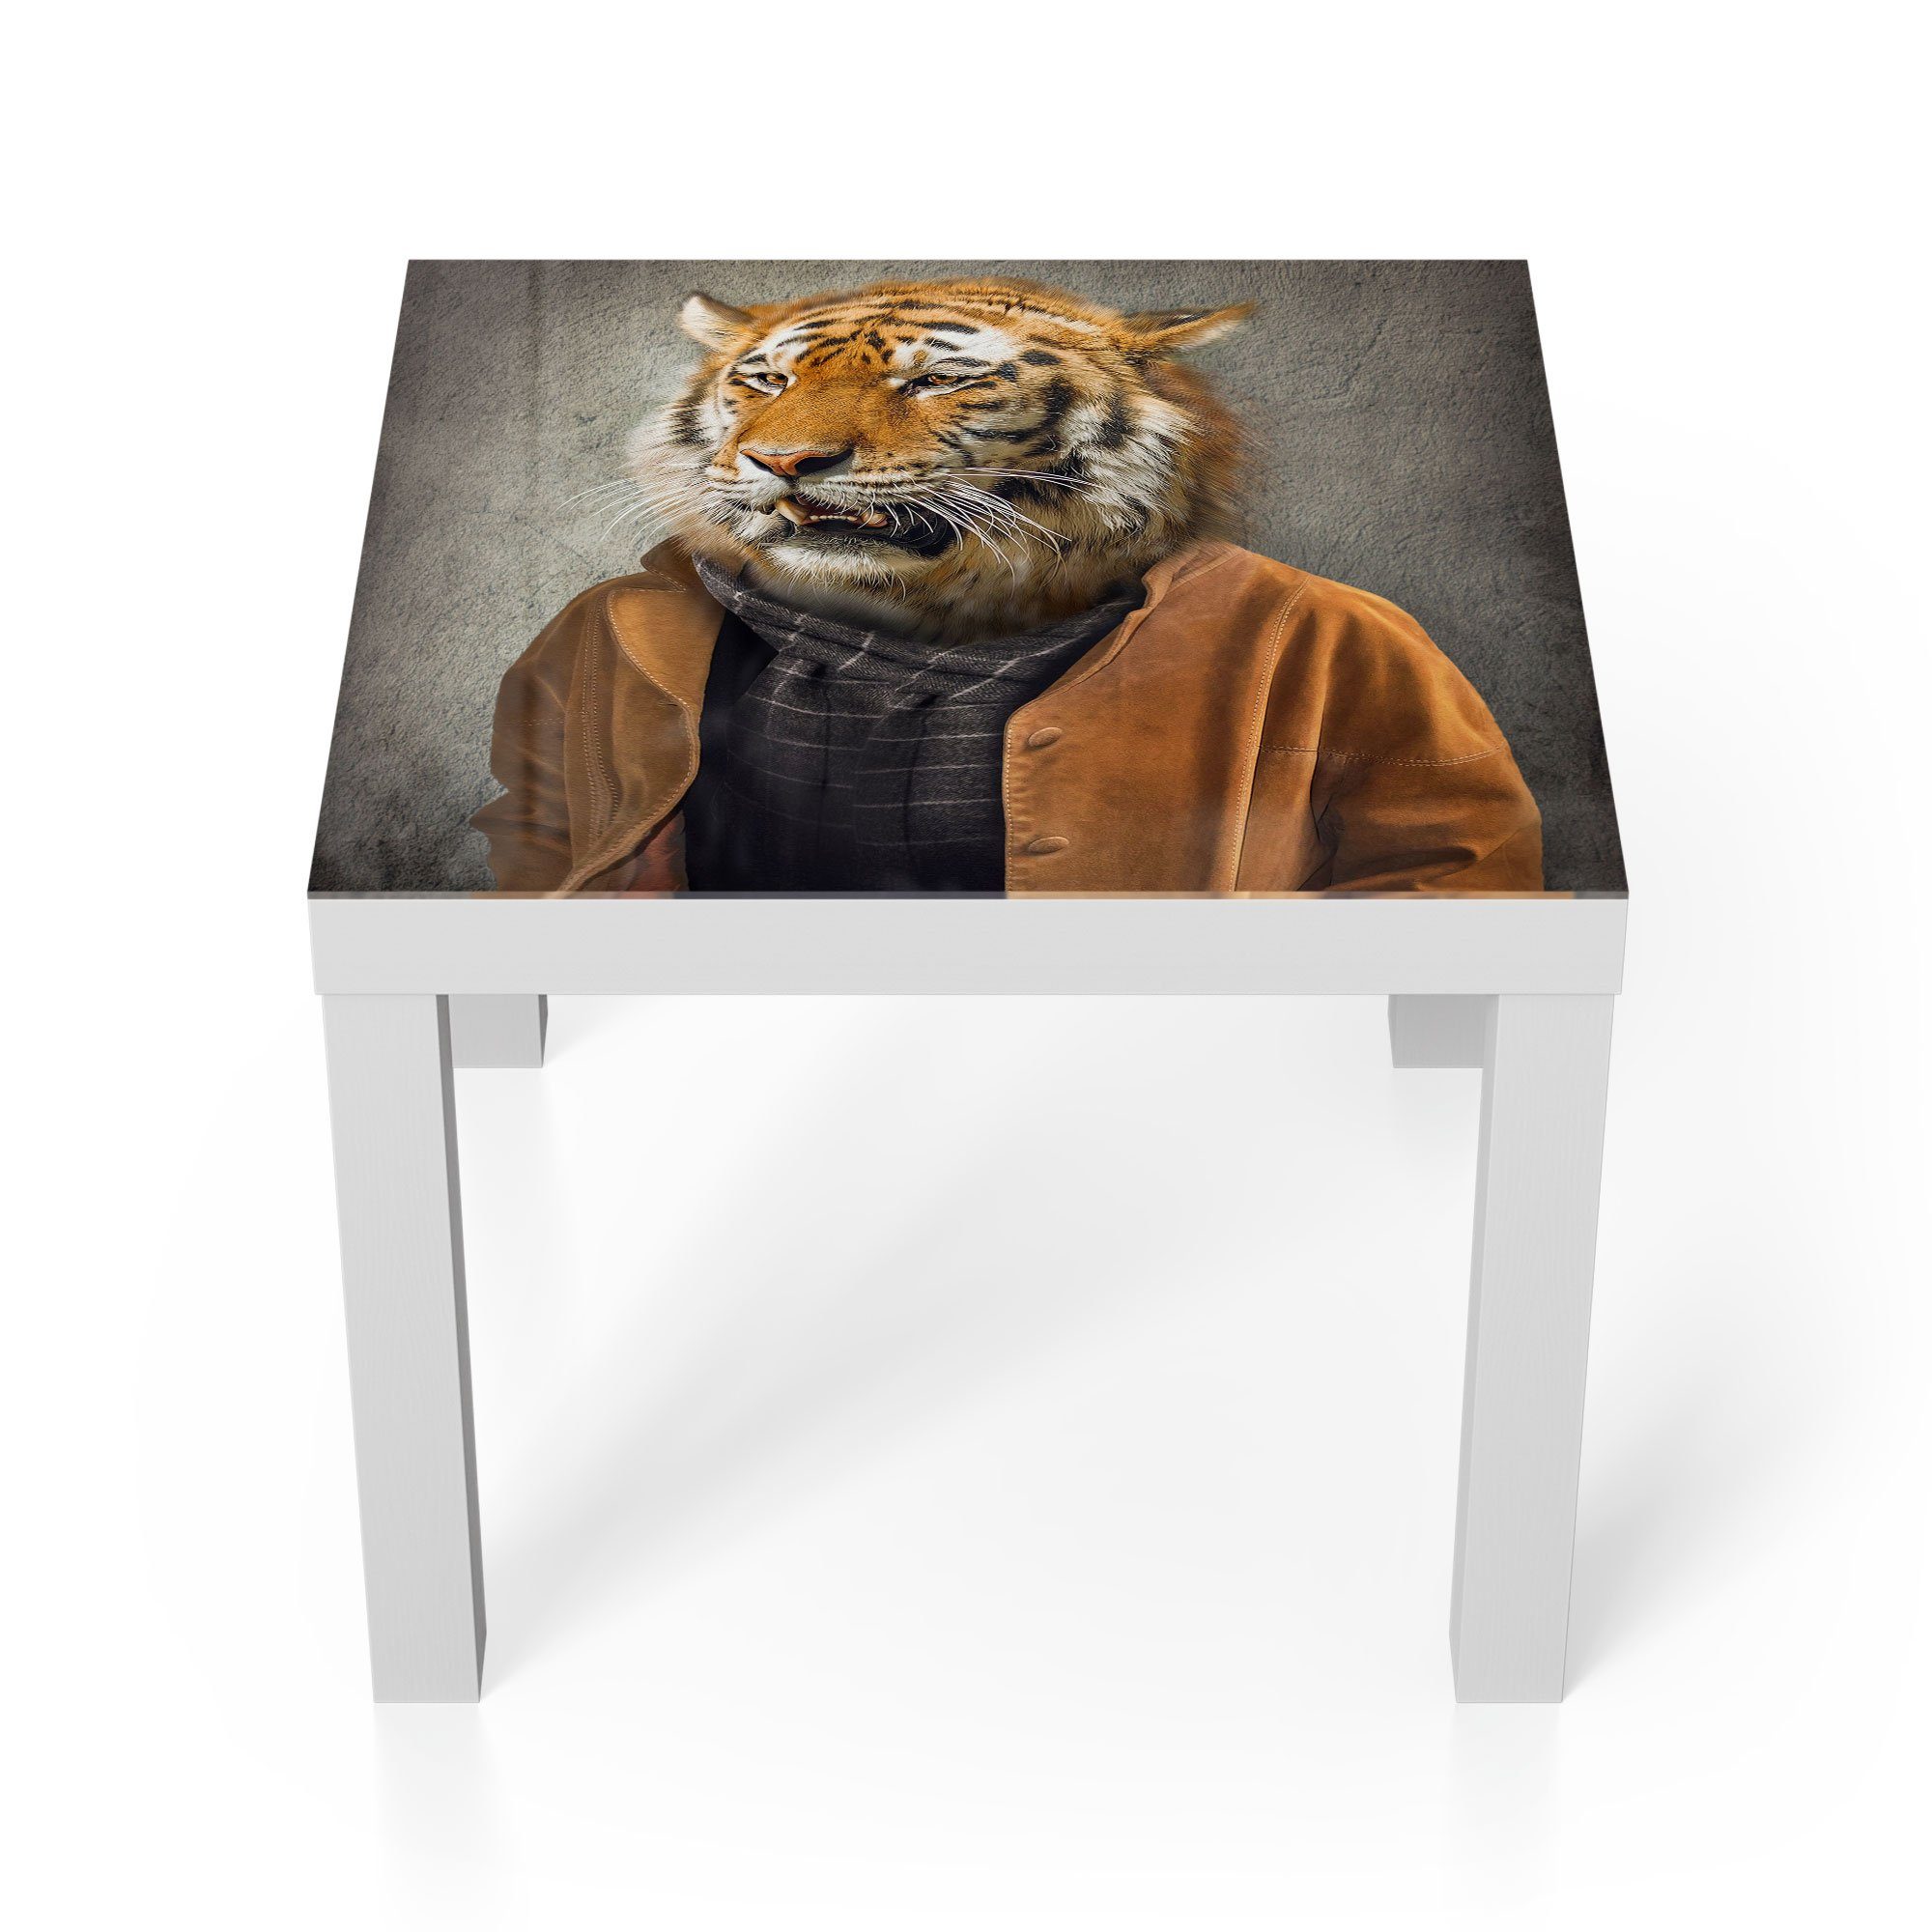 DEQORI Couchtisch 'Tiger in Glas modern Menschengestalt', Glastisch Weiß Beistelltisch